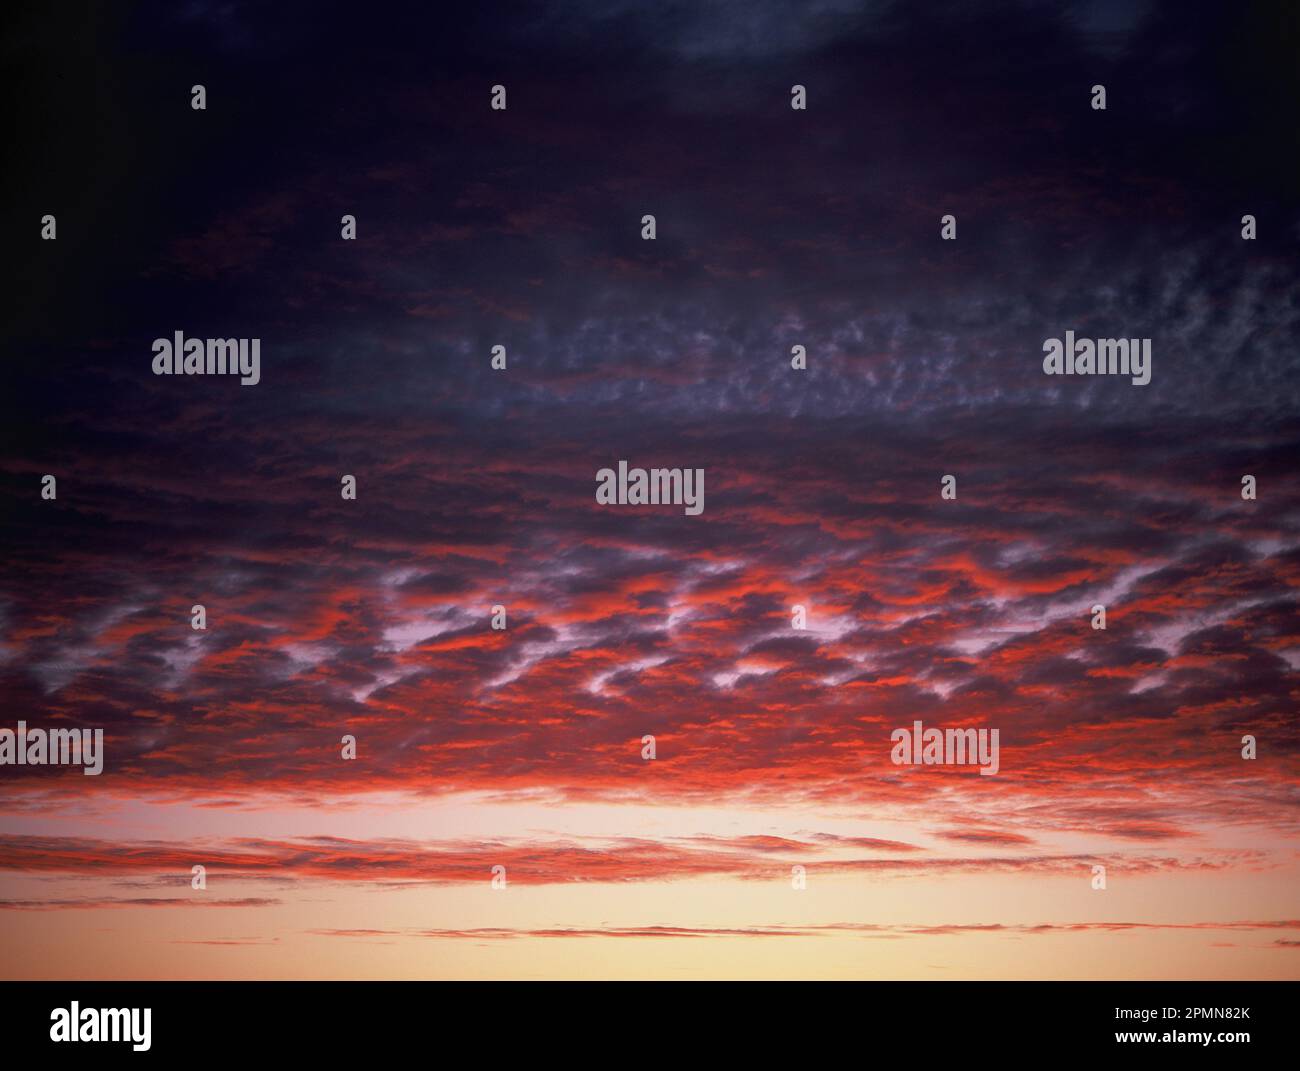 Panoramica. Cielo rosso con altocumuli e stratocumuli nuvole al crepuscolo subito dopo il tramonto. Foto Stock